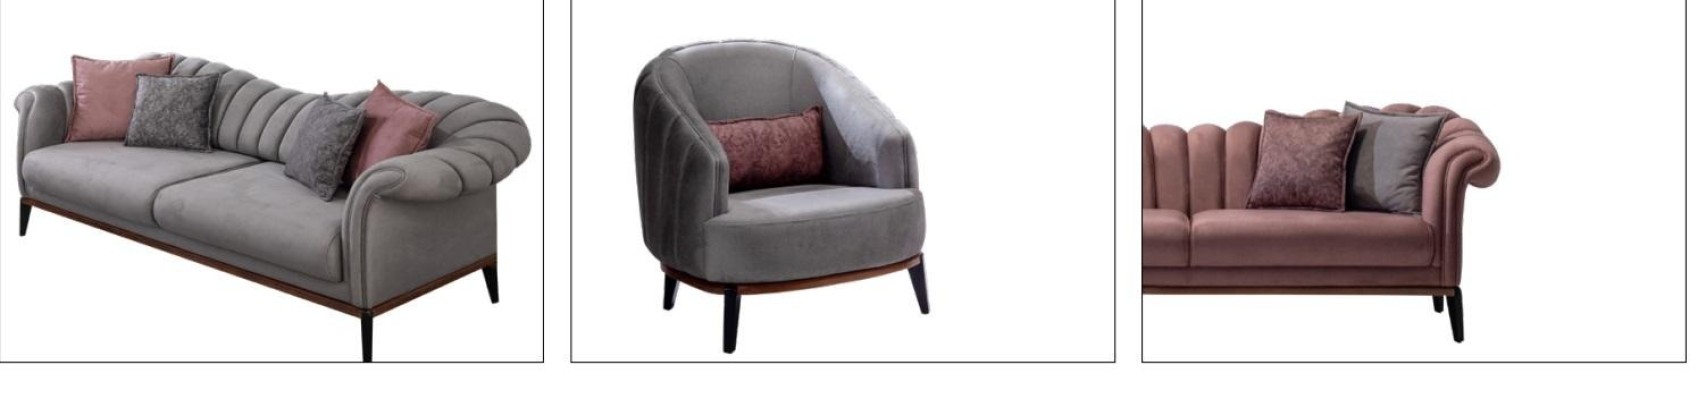 Роскошный комплект мягких диванов из 4х предметов 3+3+1+1 местных текстильная обивка современный дизайн